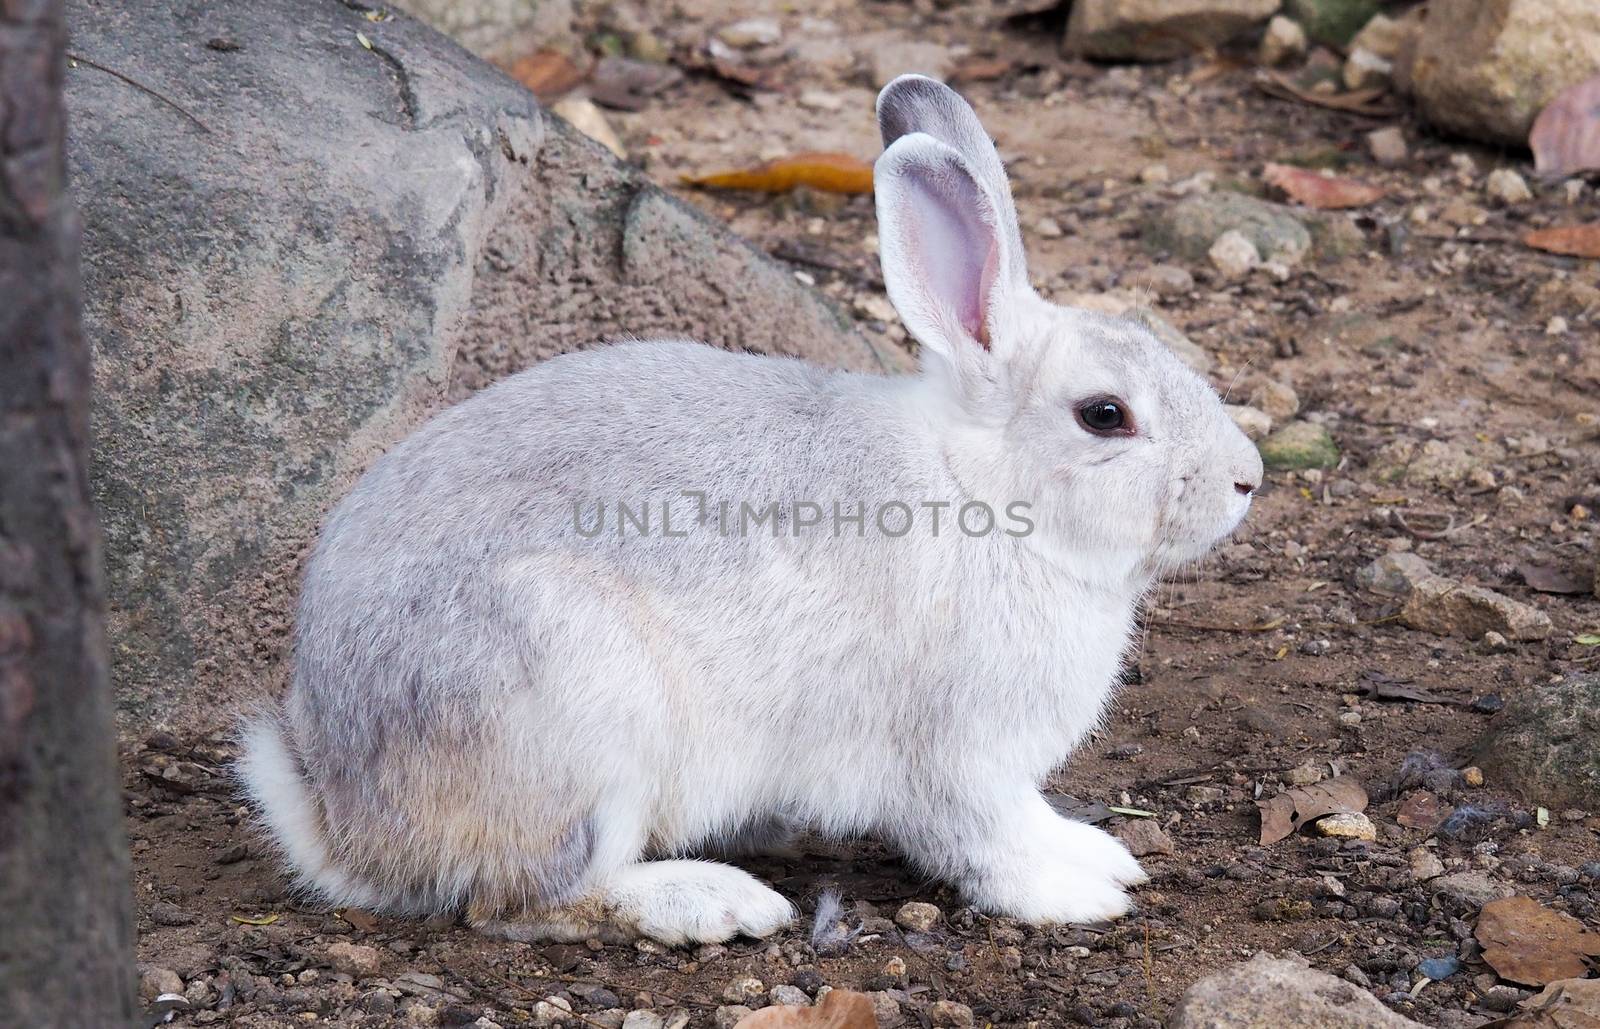 Long-eared rabbit is a skin disease. Ringworm disease by kittima05